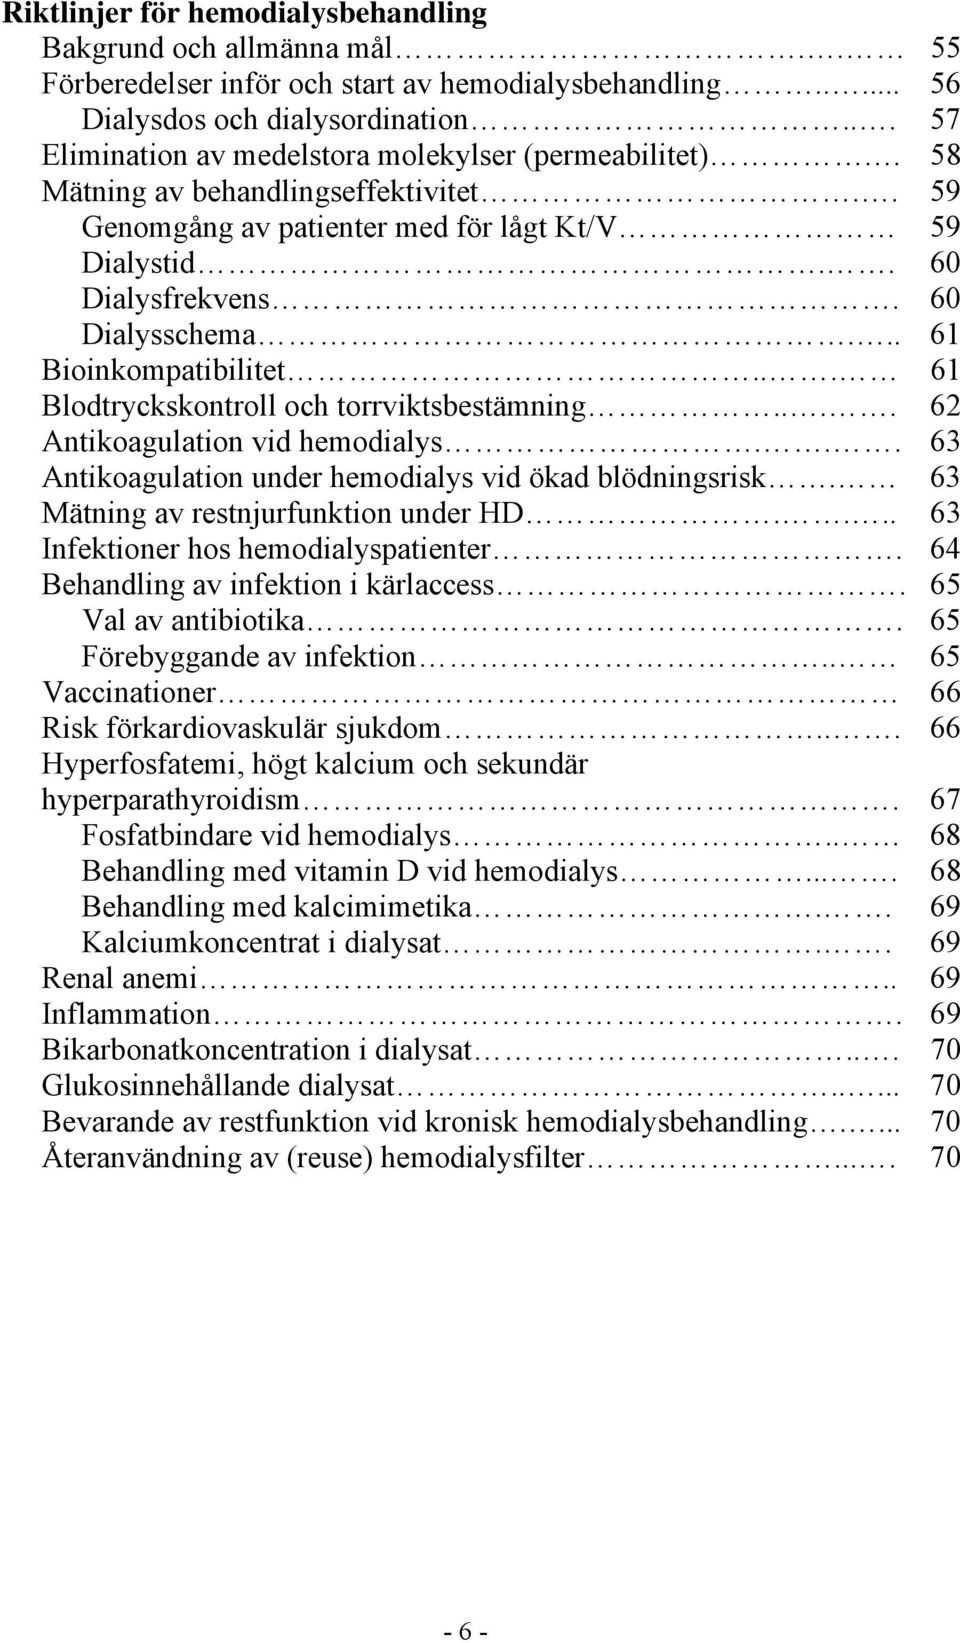 .. 61 Bioinkompatibilitet... 61 Blodtryckskontroll och torrviktsbestämning.... 62 Antikoagulation vid hemodialys... 63 Antikoagulation under hemodialys vid ökad blödningsrisk.